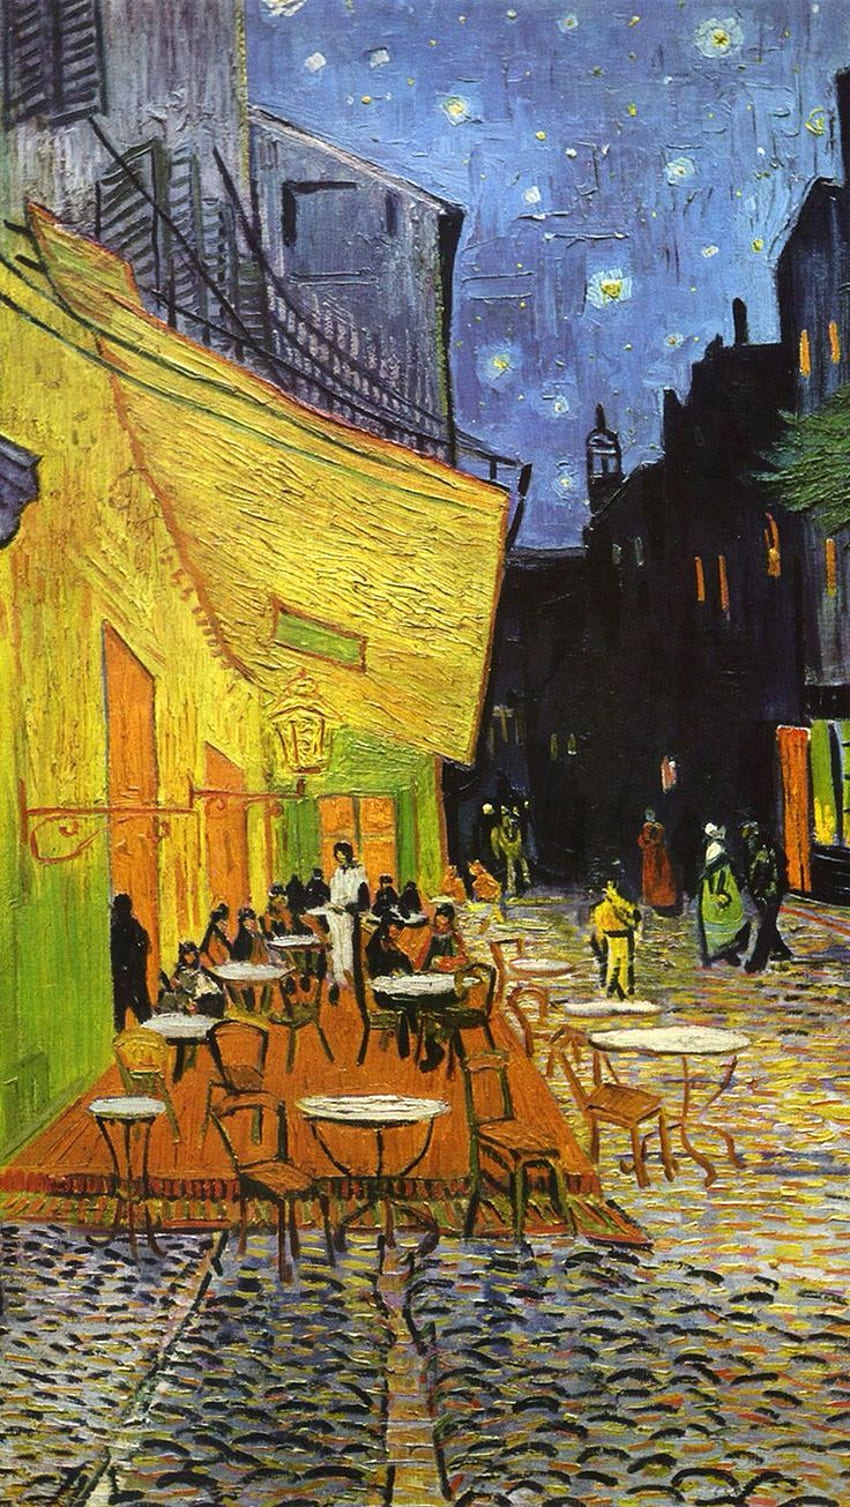 Không ai có thể phủ nhận sức hút của những bức tranh tài hoa của Vincent Van Gogh. Với bộ sưu tập hình nền đầy tinh tế và nghệ thuật, bạn sẽ có đường điện thoại của mình trở thành một bức tranh nghệ thuật độc đáo. \